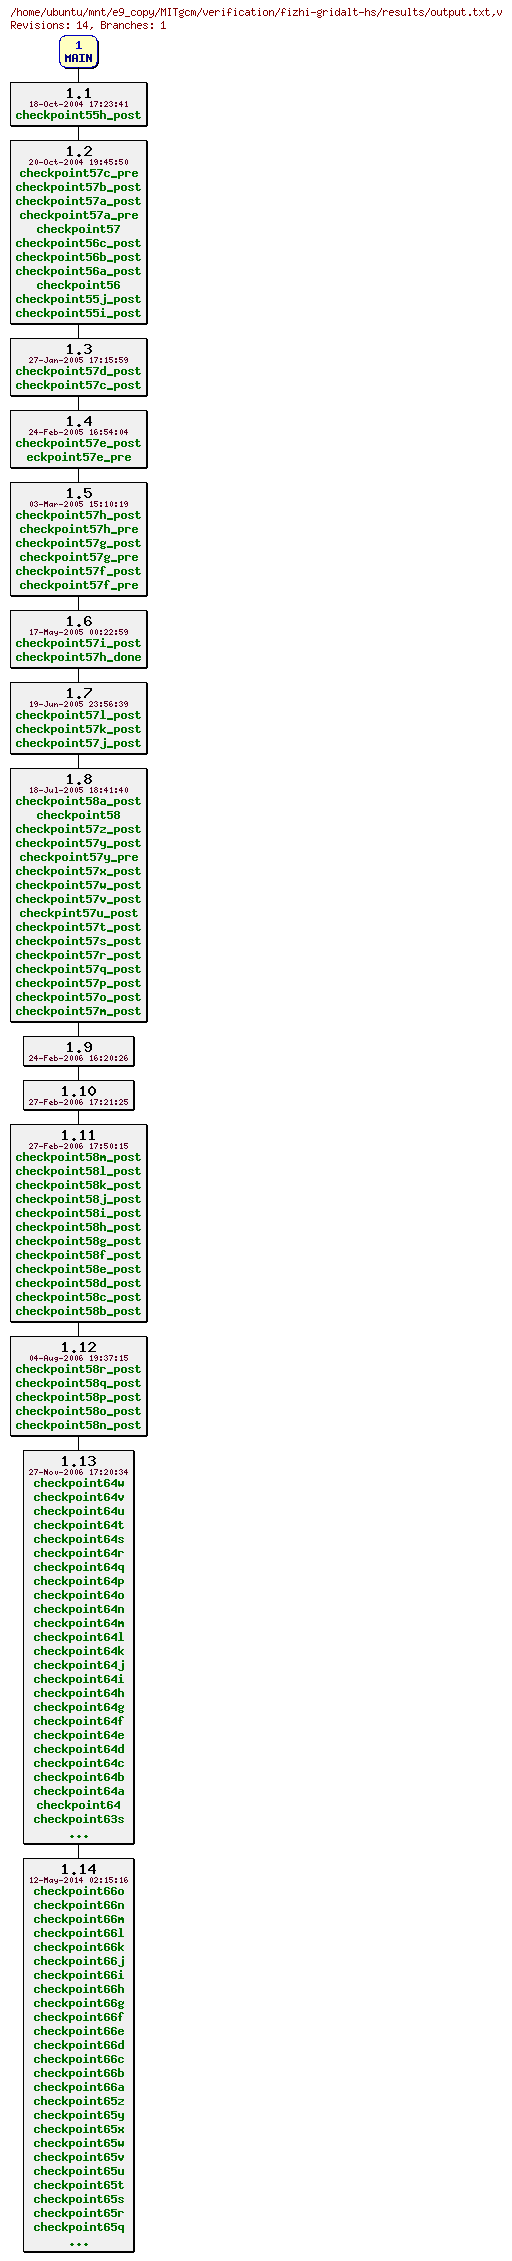 Revisions of MITgcm/verification/fizhi-gridalt-hs/results/output.txt